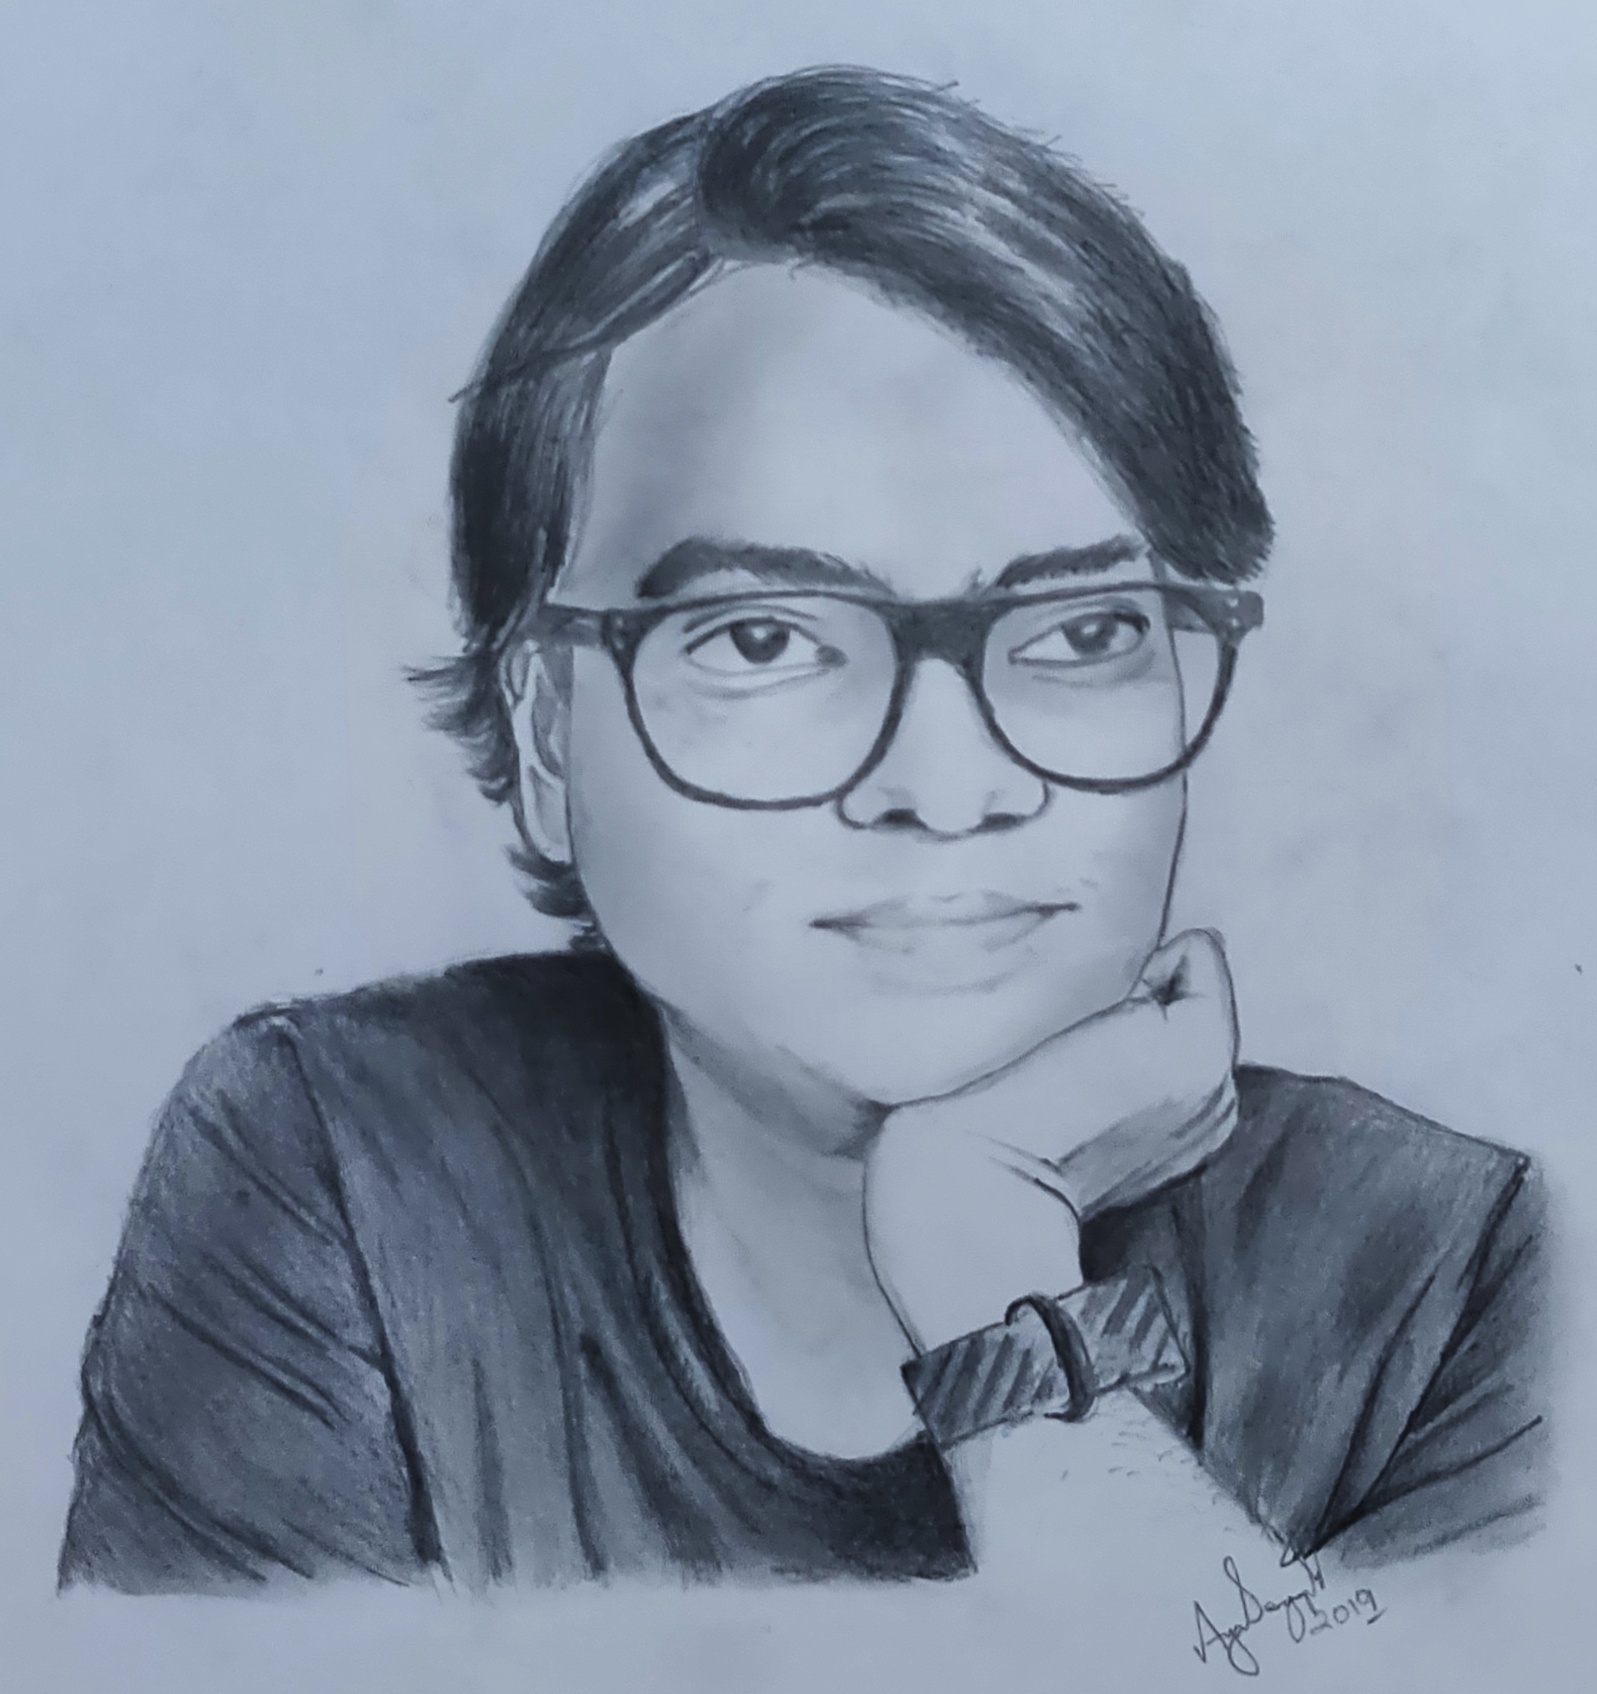 Sketch by: Ayan Sengupta